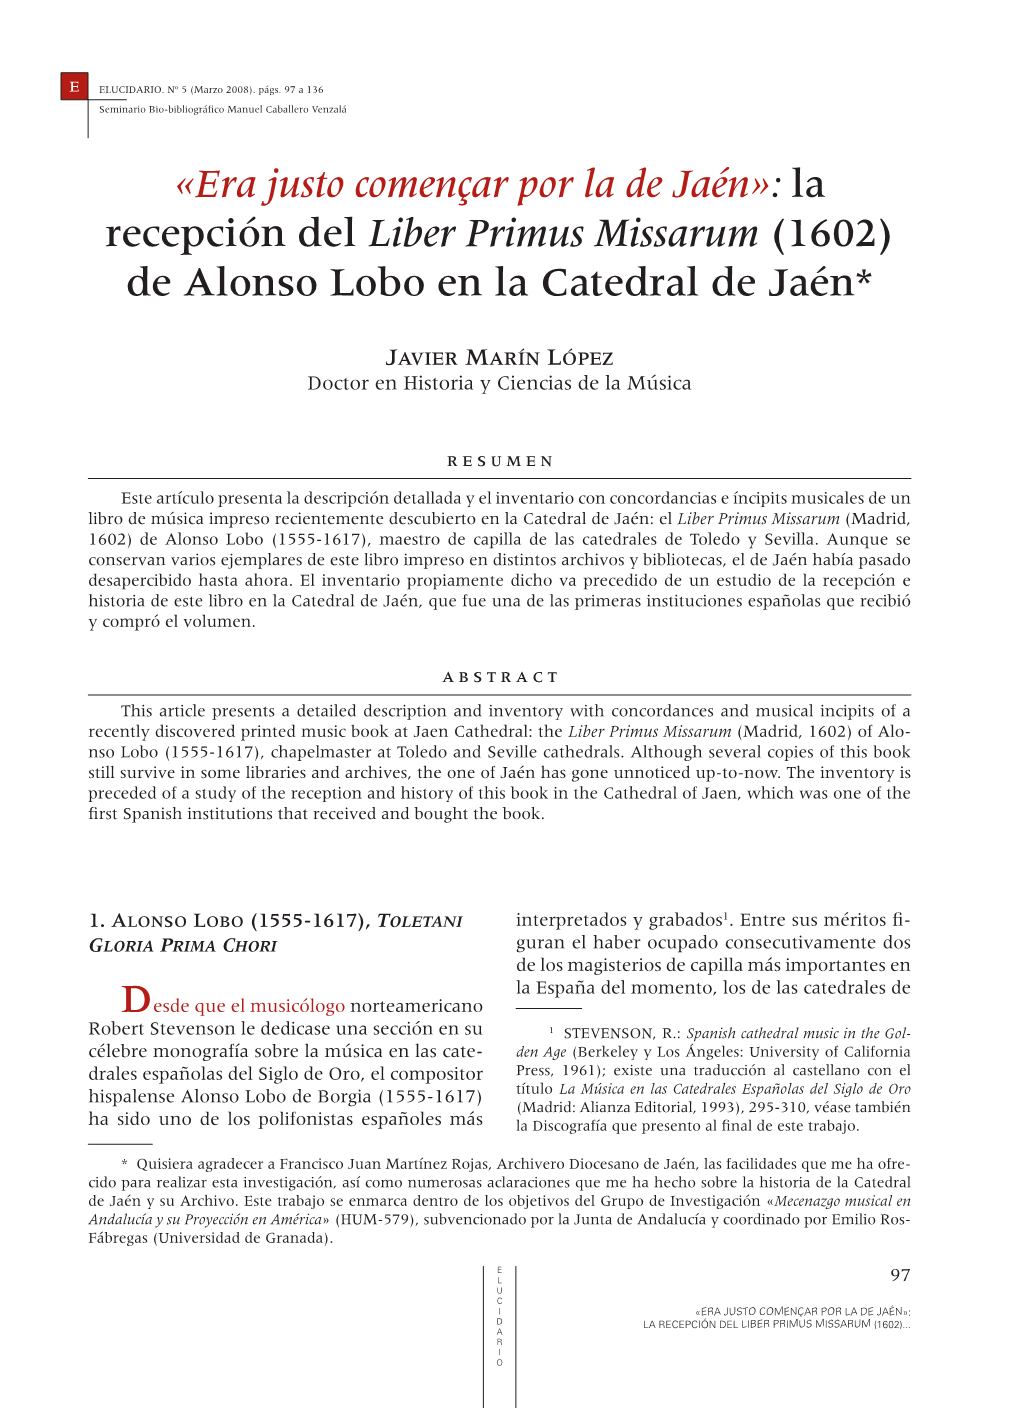 La Recepción Del Liber Primus Missarum (1602) De Alonso Lobo En La Catedral De Jaén*